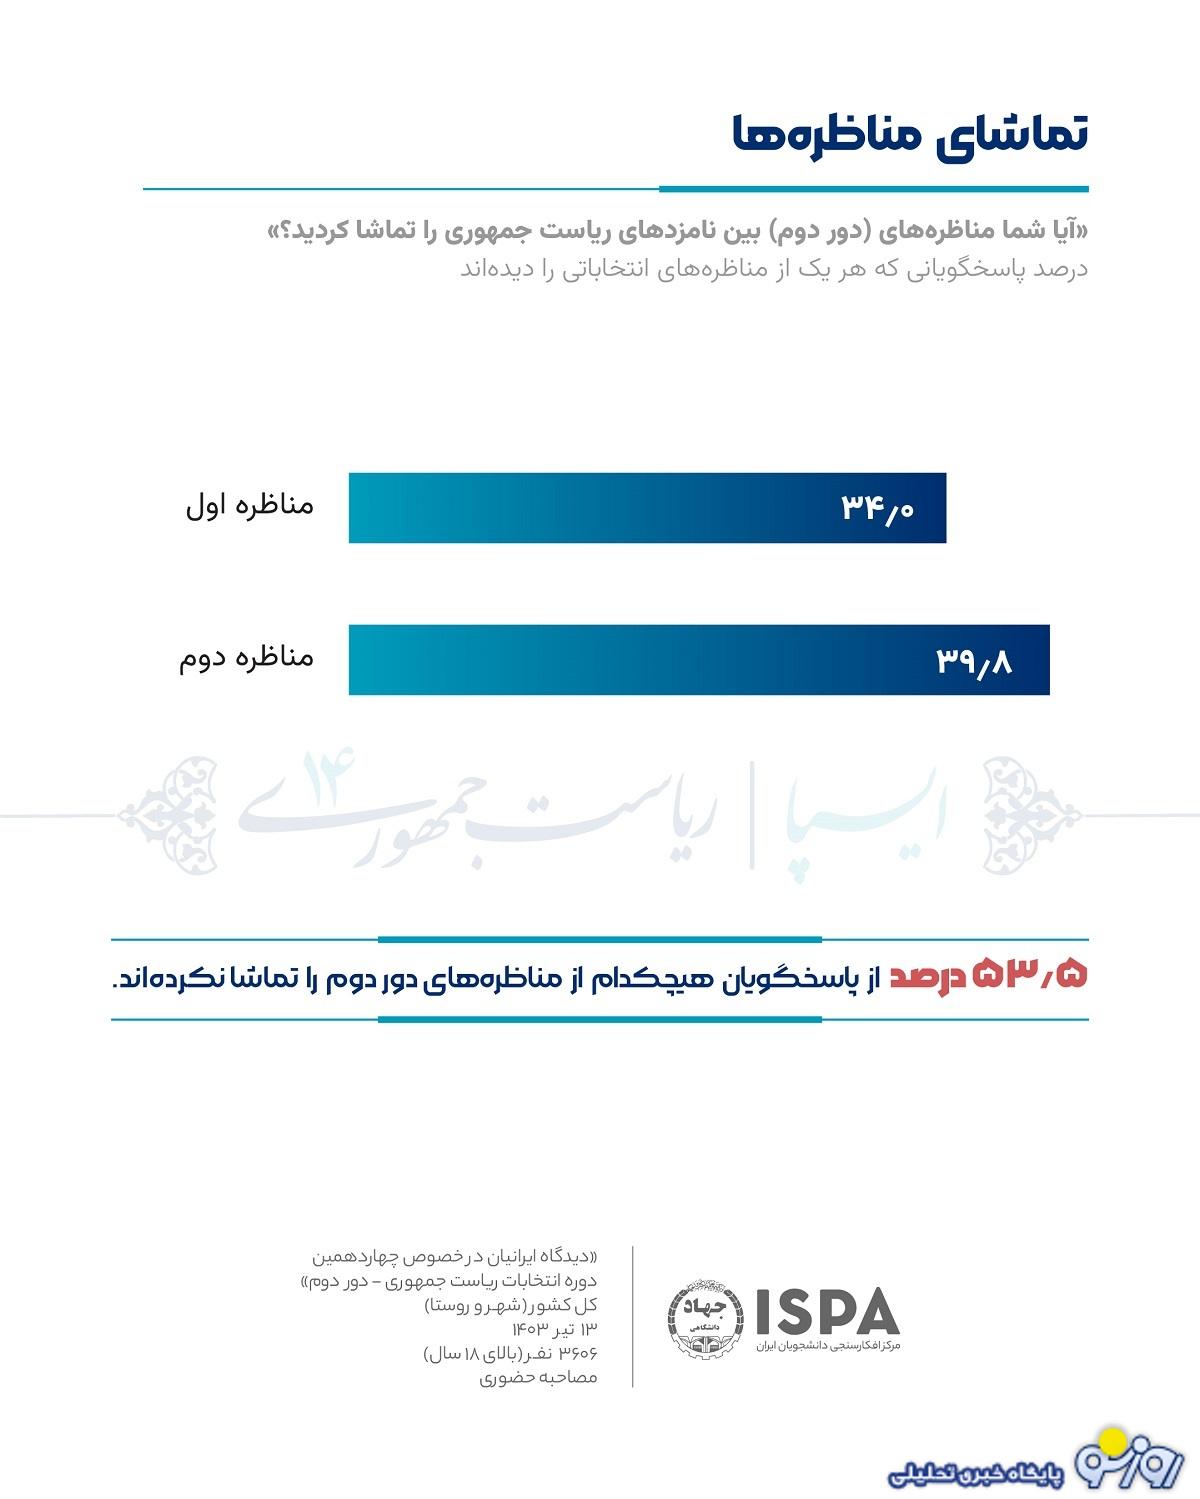 نتایج جدیدترین نظرسنجی ایسپا:مشارکت در انتخابات 45 درصد/میزان رأی مسعود پزشکیان 49.5 درصد و میزان رأی سعید جلیلی 43.9 درصد/ 4.8 درصد مردد در انتخاب نامزد